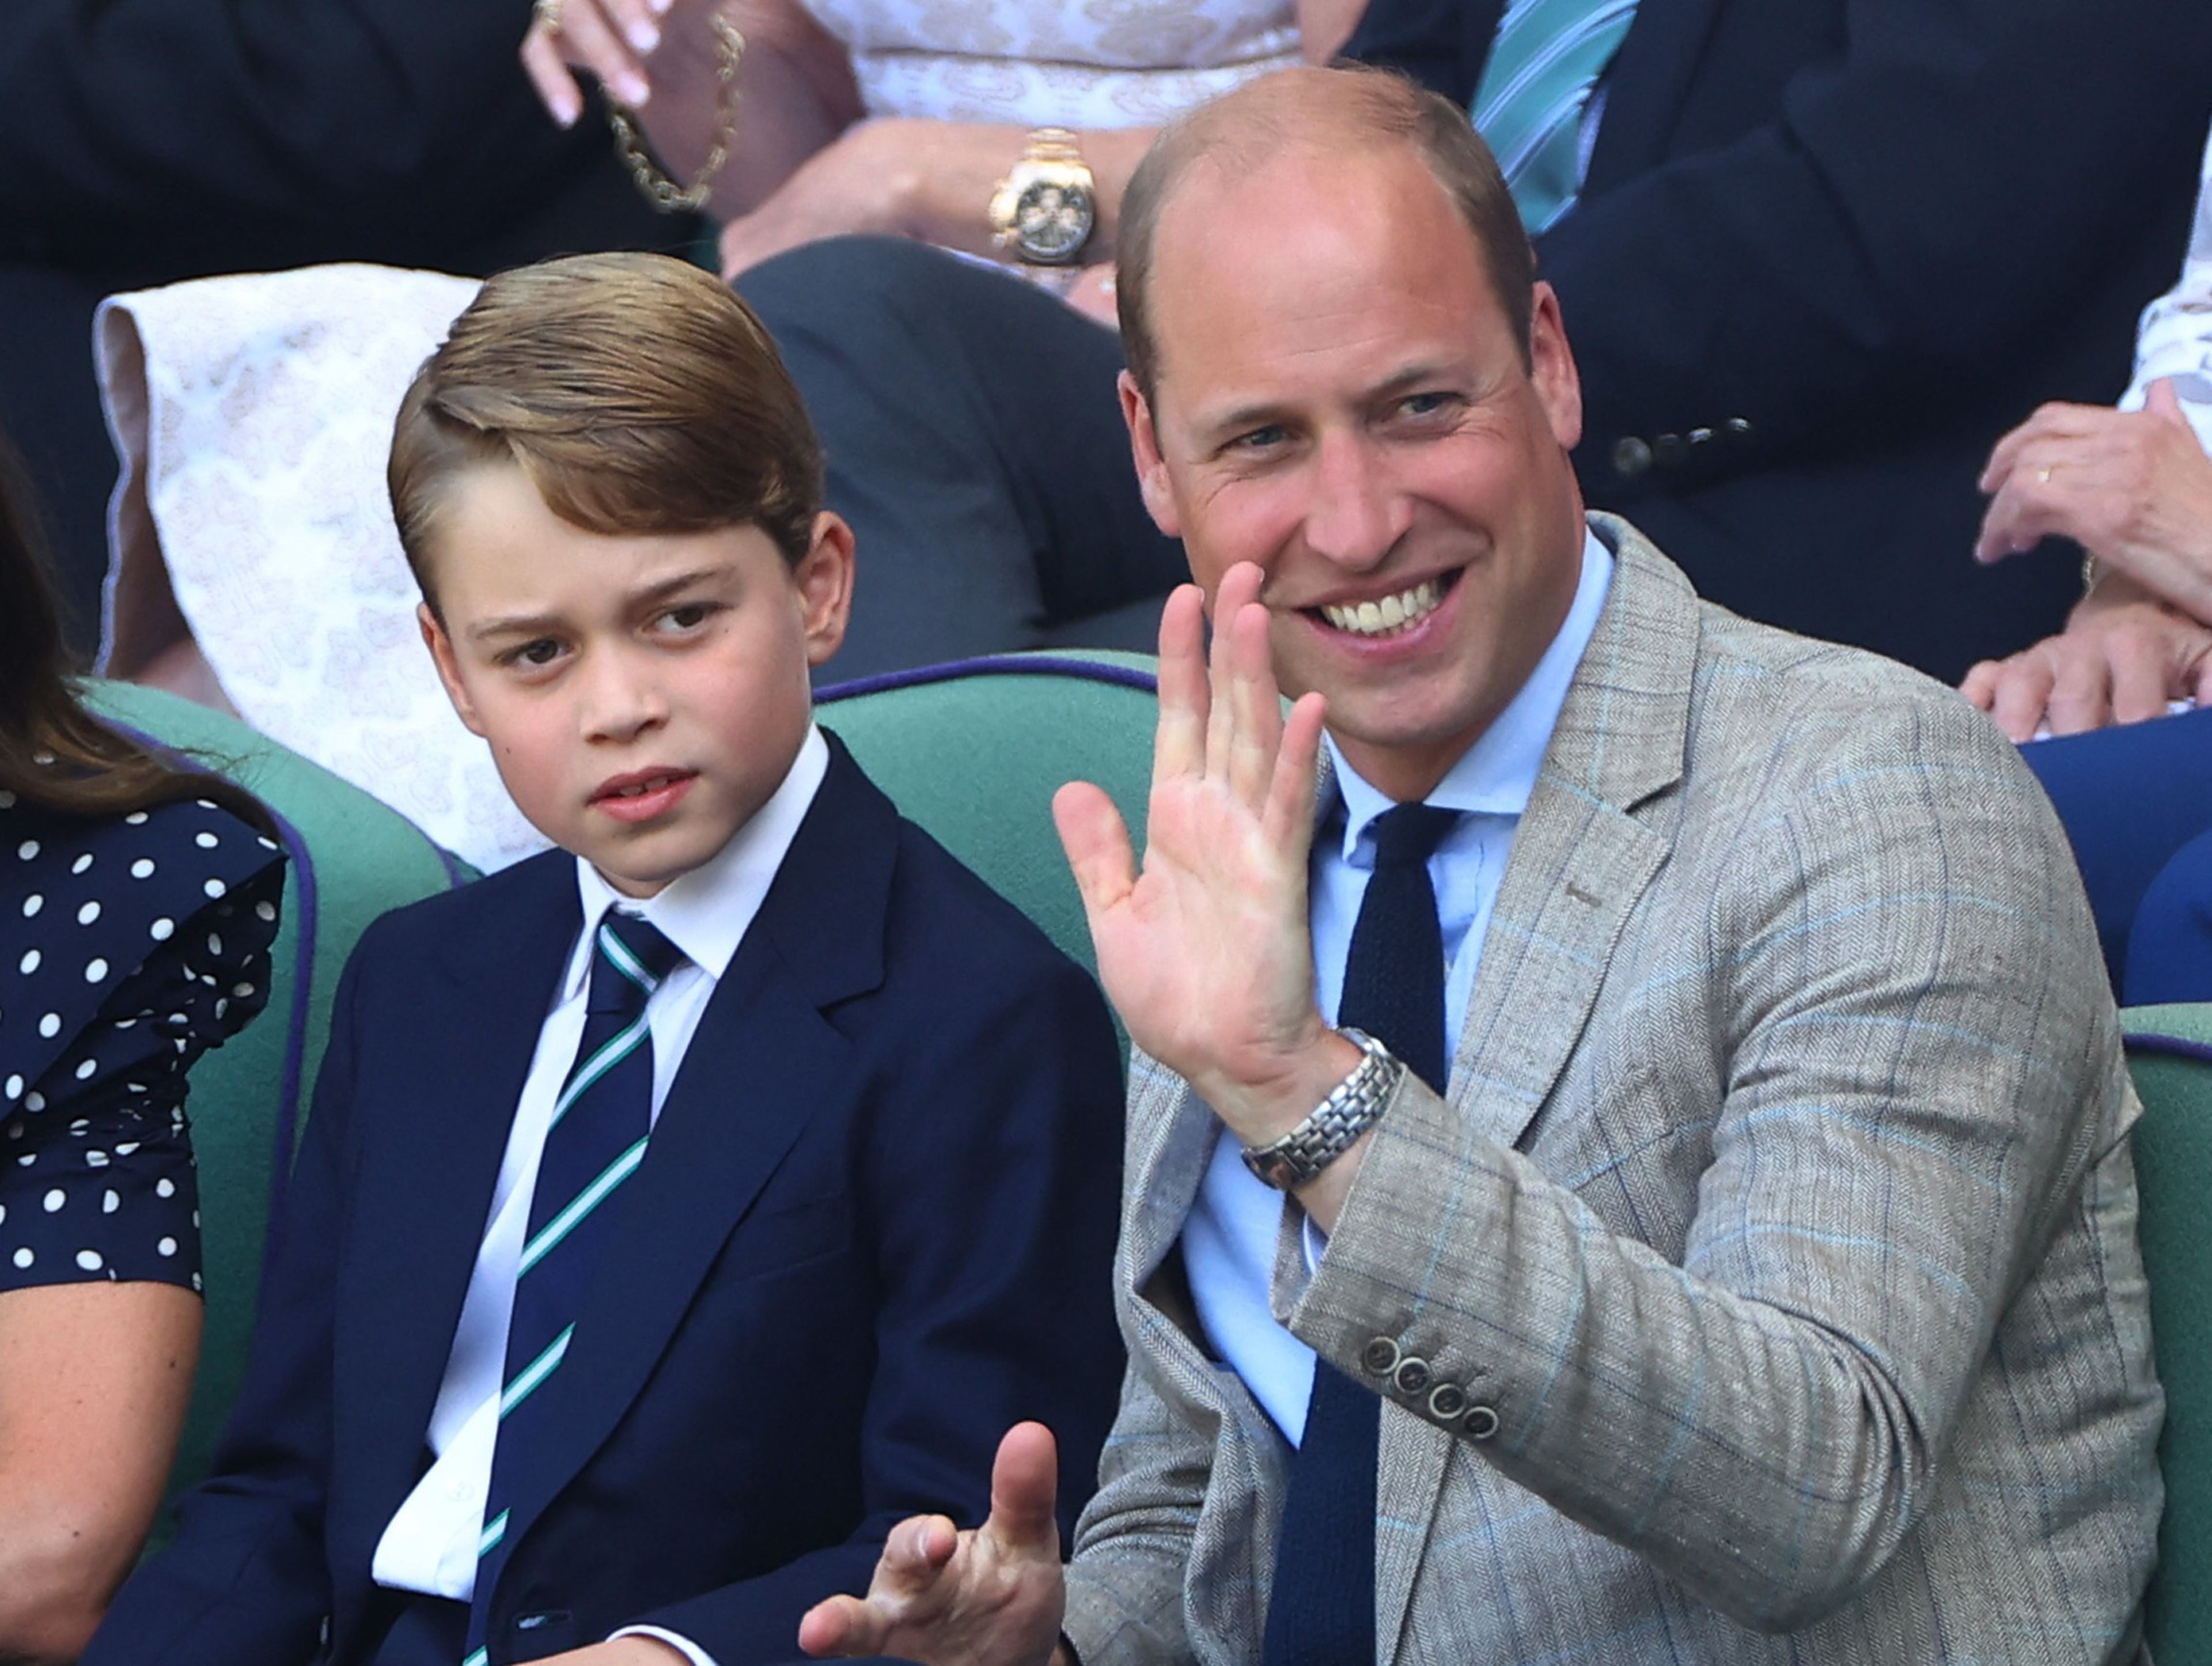 El príncipe George junto a su padre, el príncipe William, en un partido de tenis.